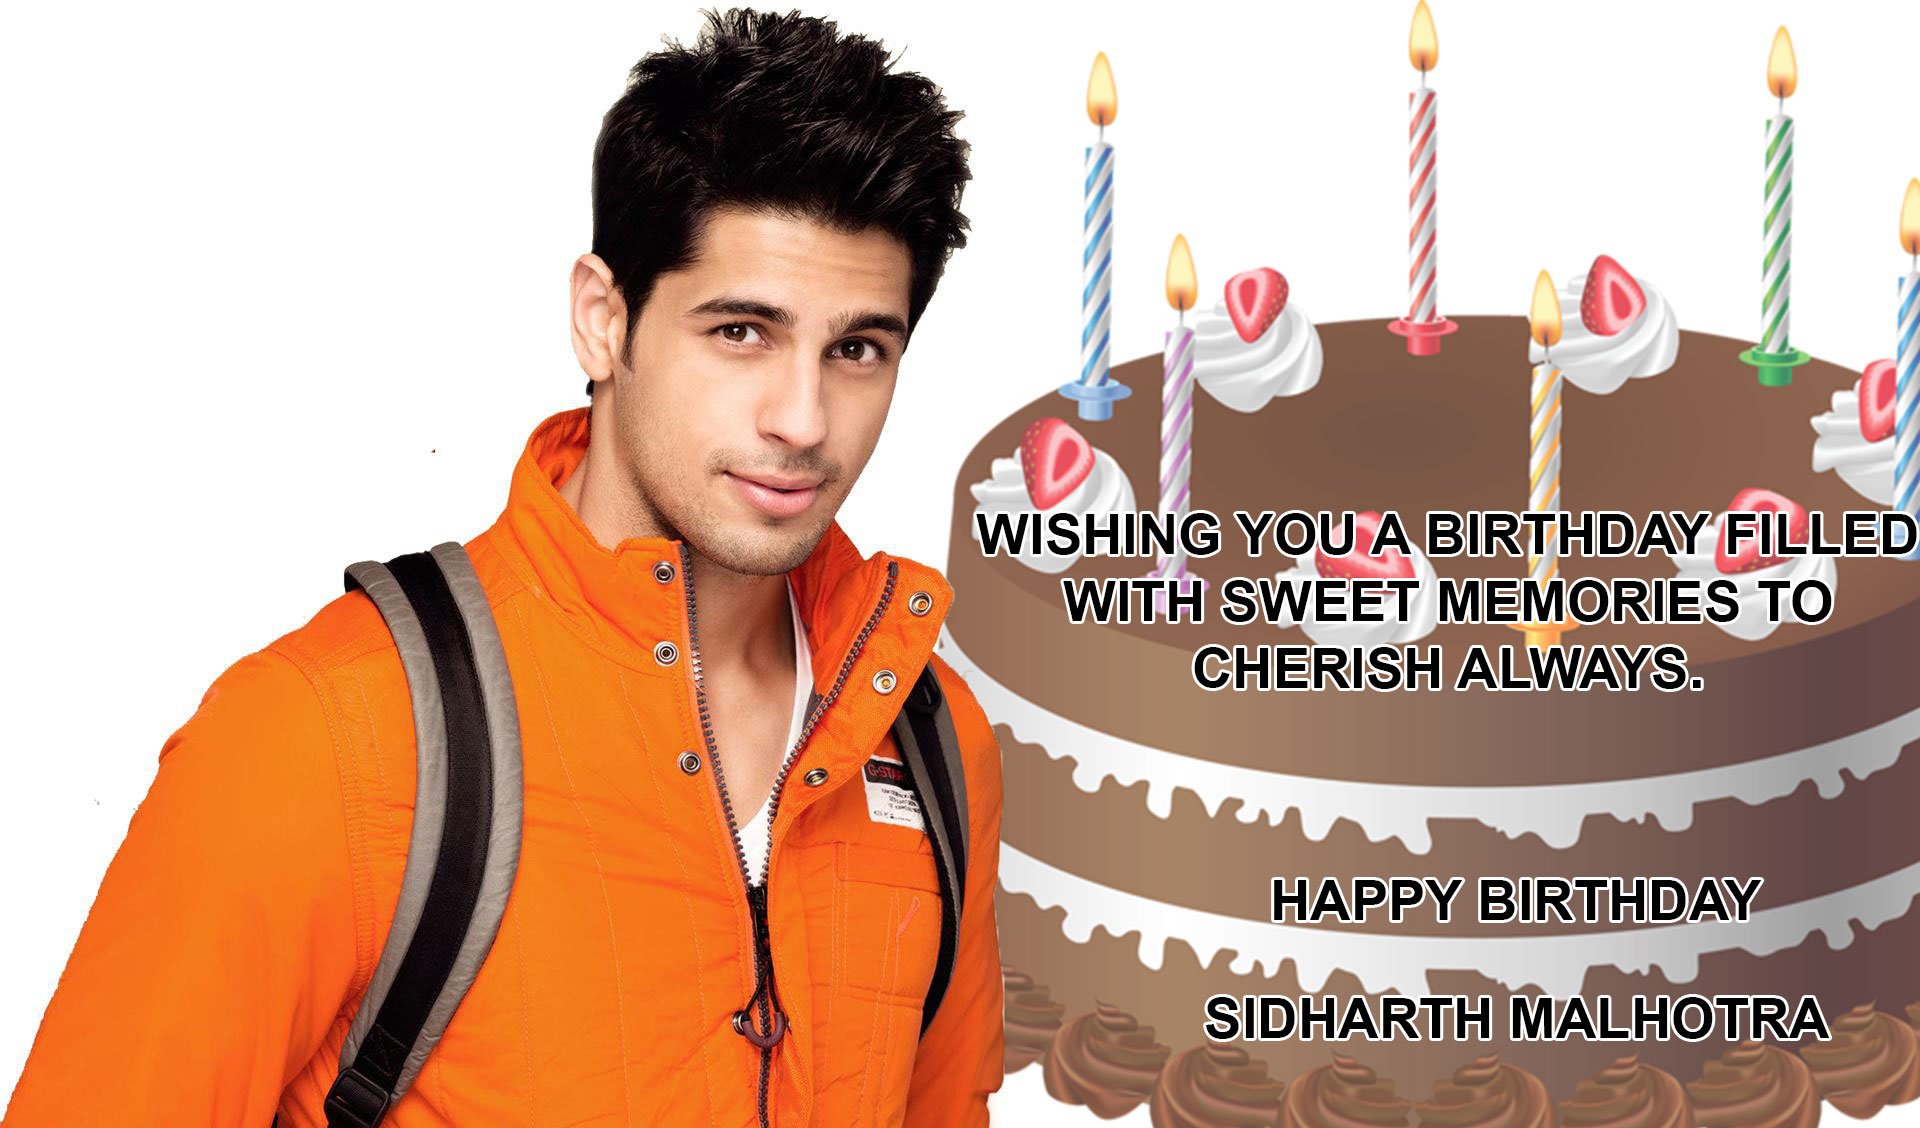 Wish you a very happy birthday Sidharth Malhotra 